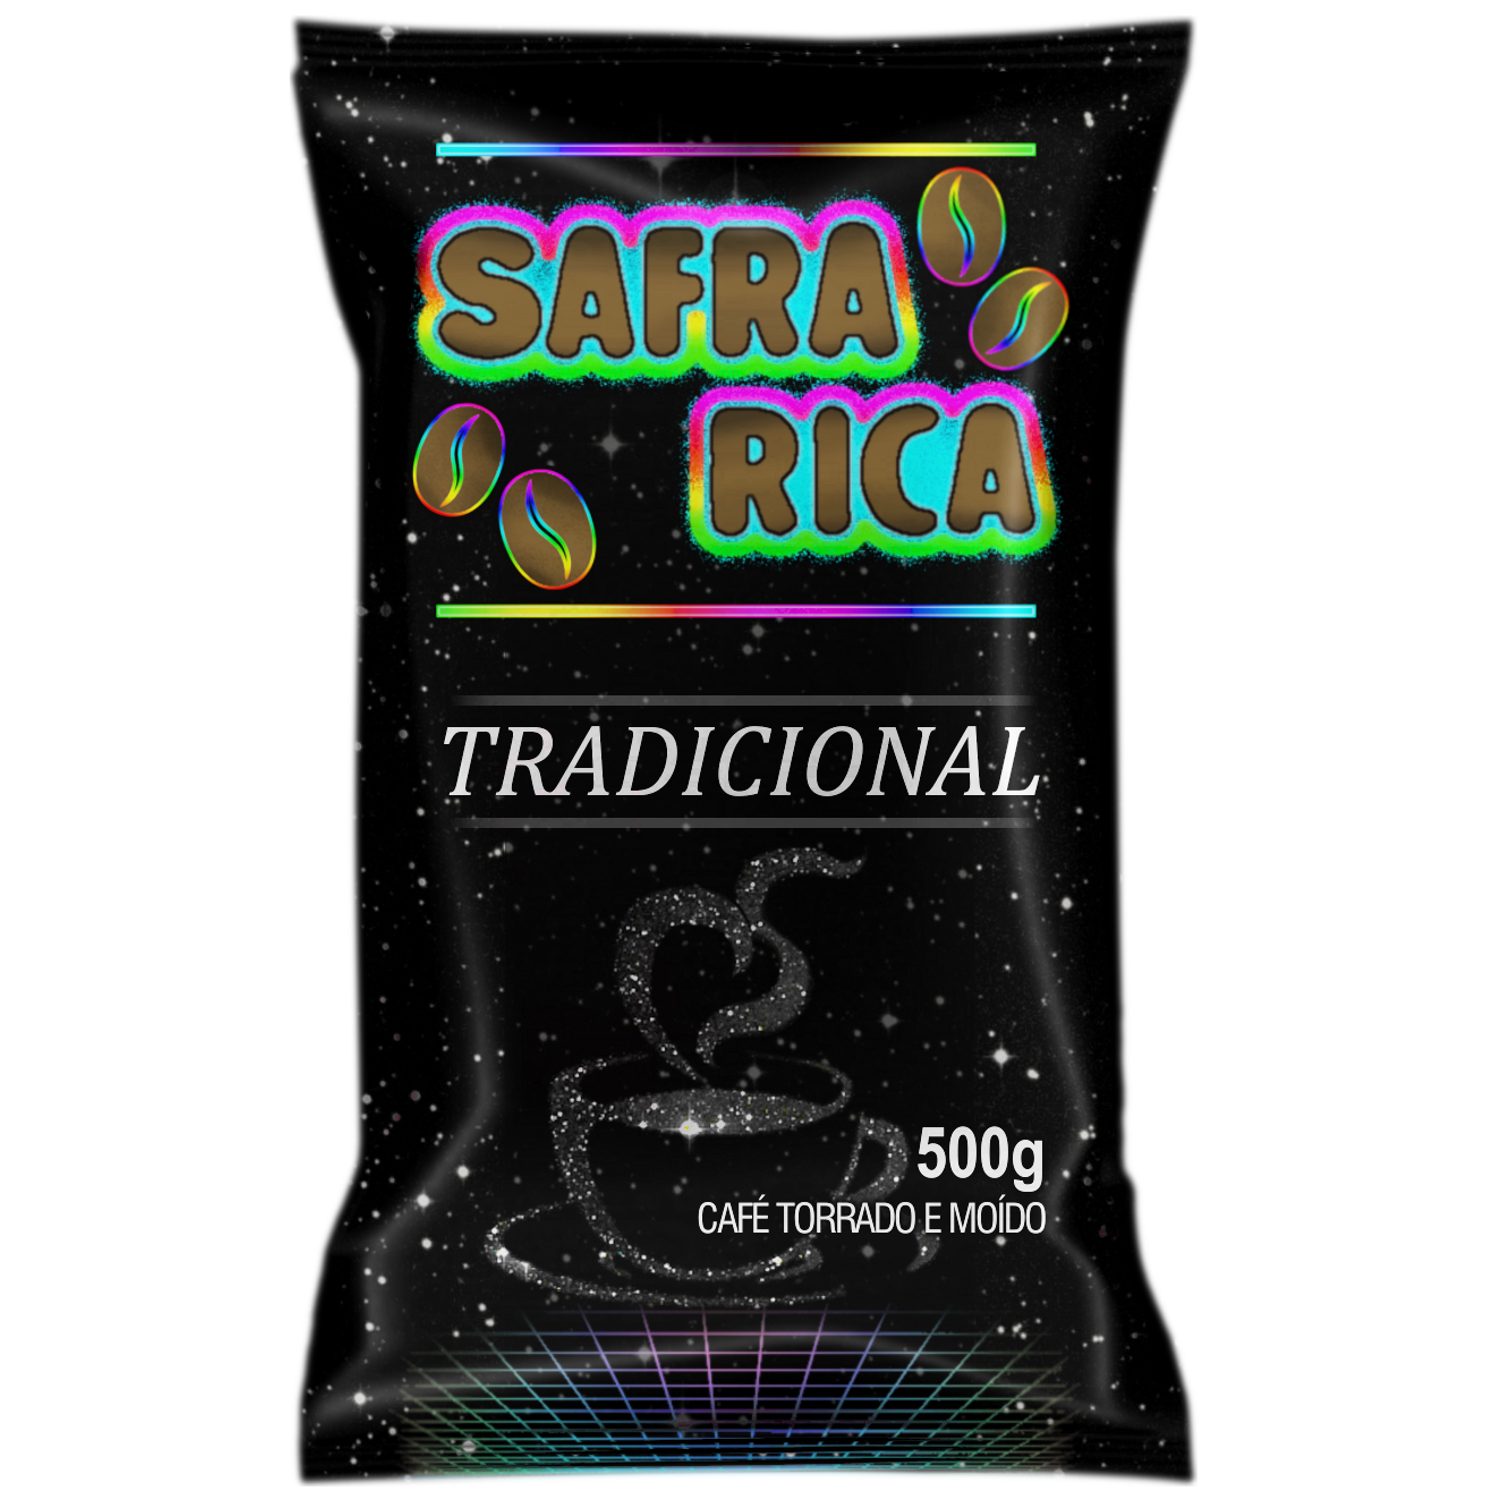 7898678530249 - CAFÉ TORRADO E MOÍDO SAFRA RICA TRADICIONAL ALMOFADA 500G